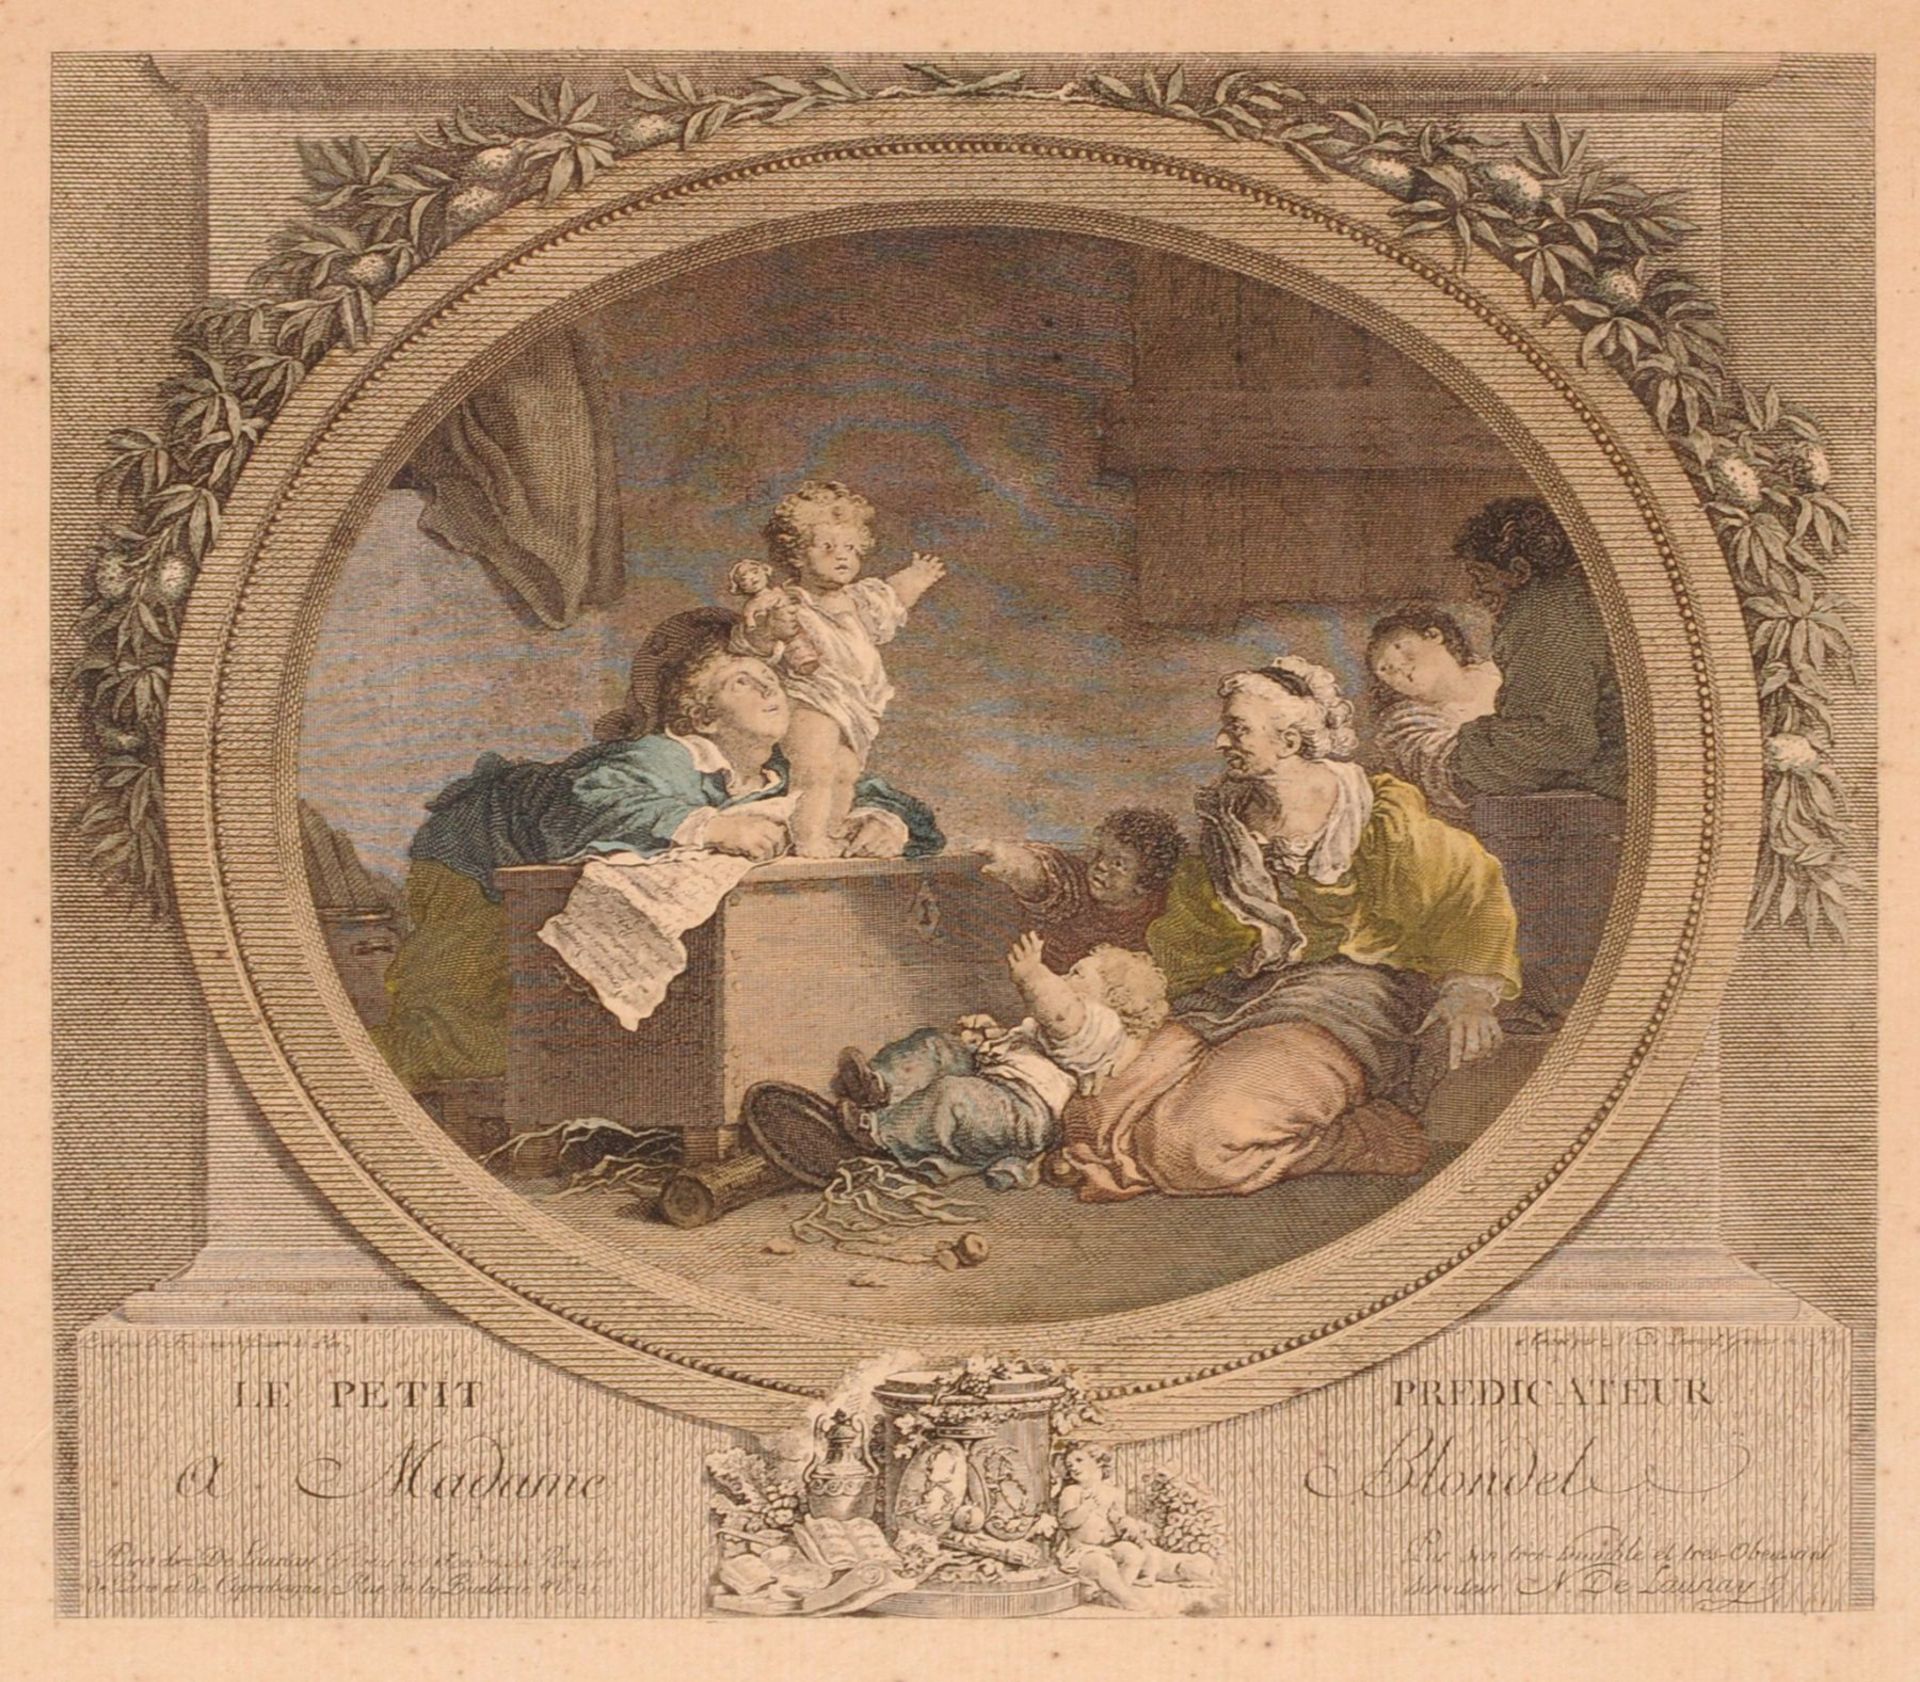 Nicolas de Launay (nach Fragonard) "L'heureuse Fécondité" / "Le Petit Predicateur". 2. H. 18. Jh.